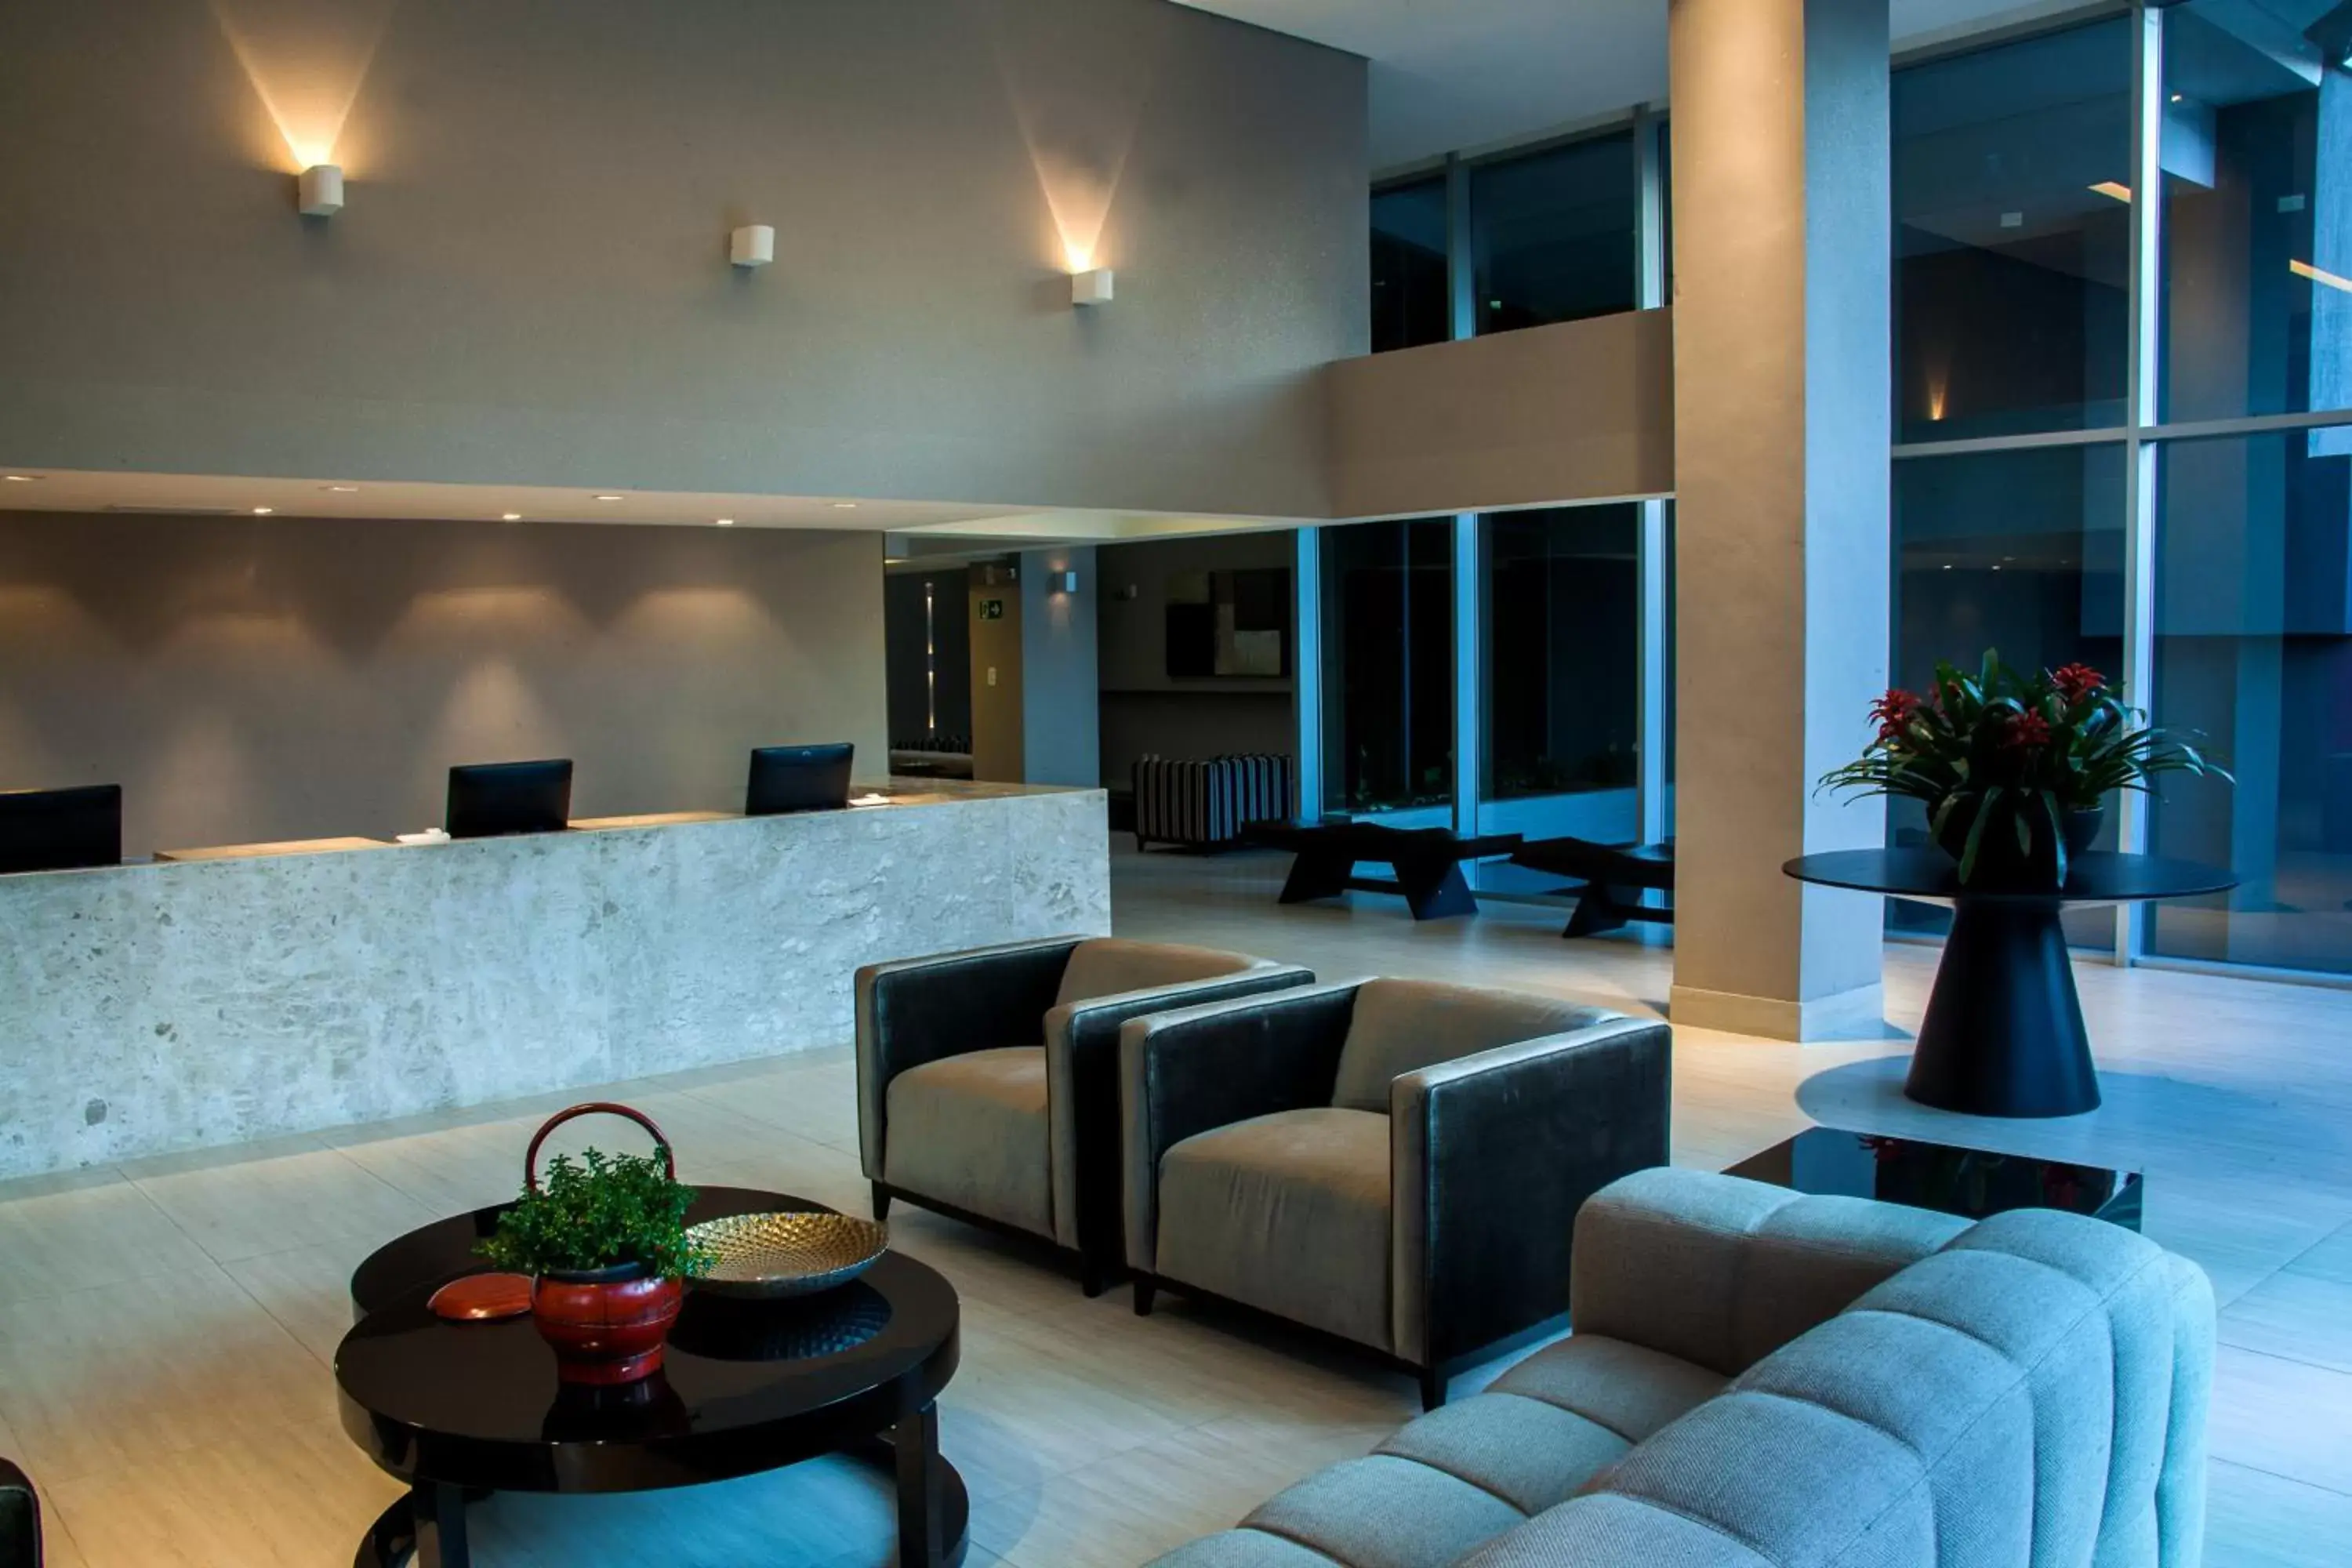 Lobby or reception, Lobby/Reception in BH Raja Hotel